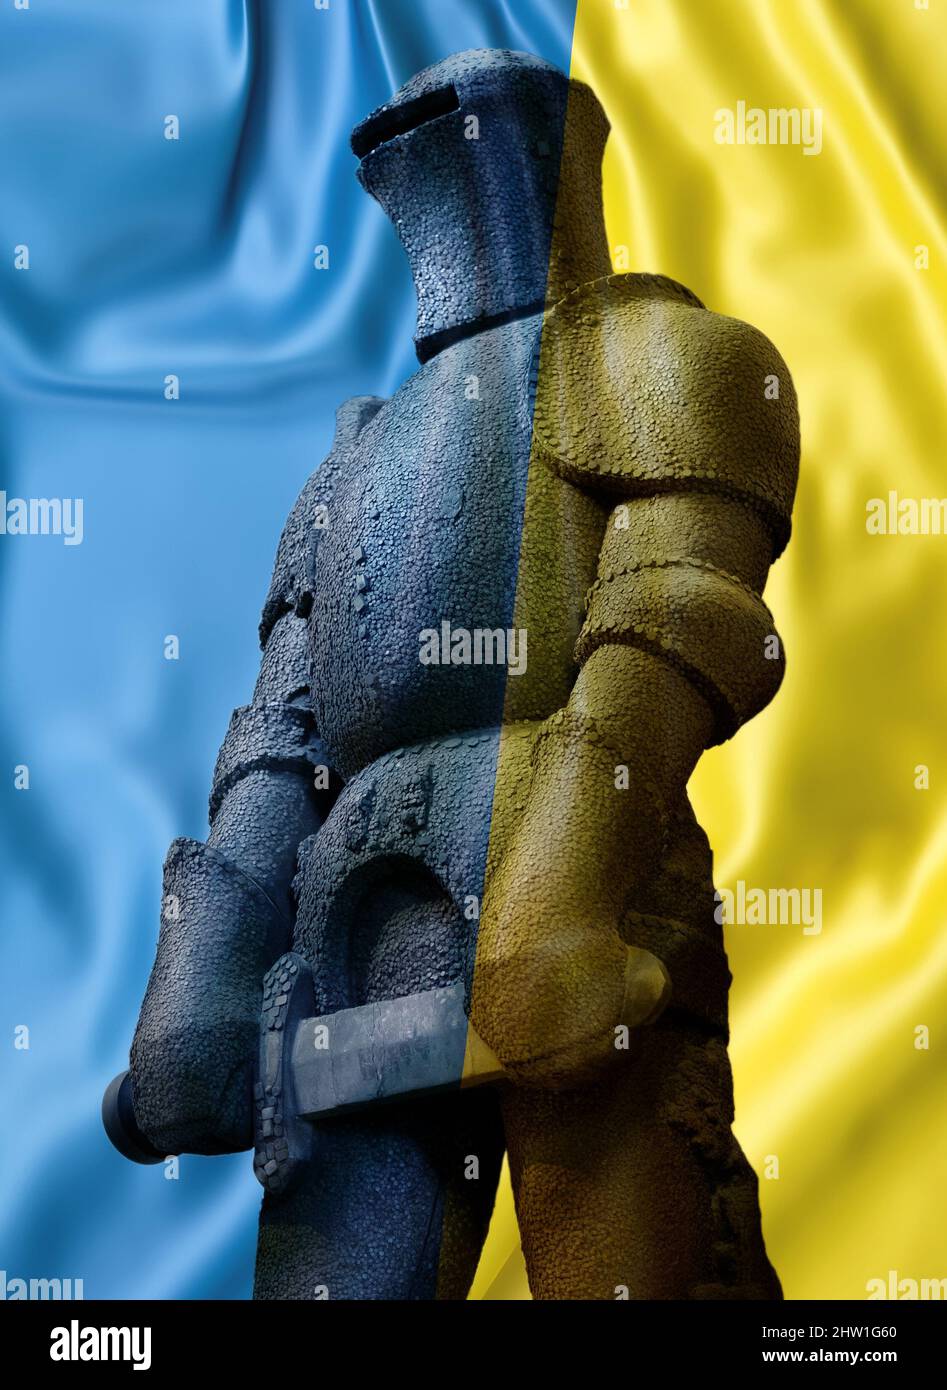 Symbole de la défense, concept autonome, statue de chevalier tenant une épée se préparant à la bataille ou à la protection, avec le drapeau de l'ukraine en bleu et jaune Banque D'Images